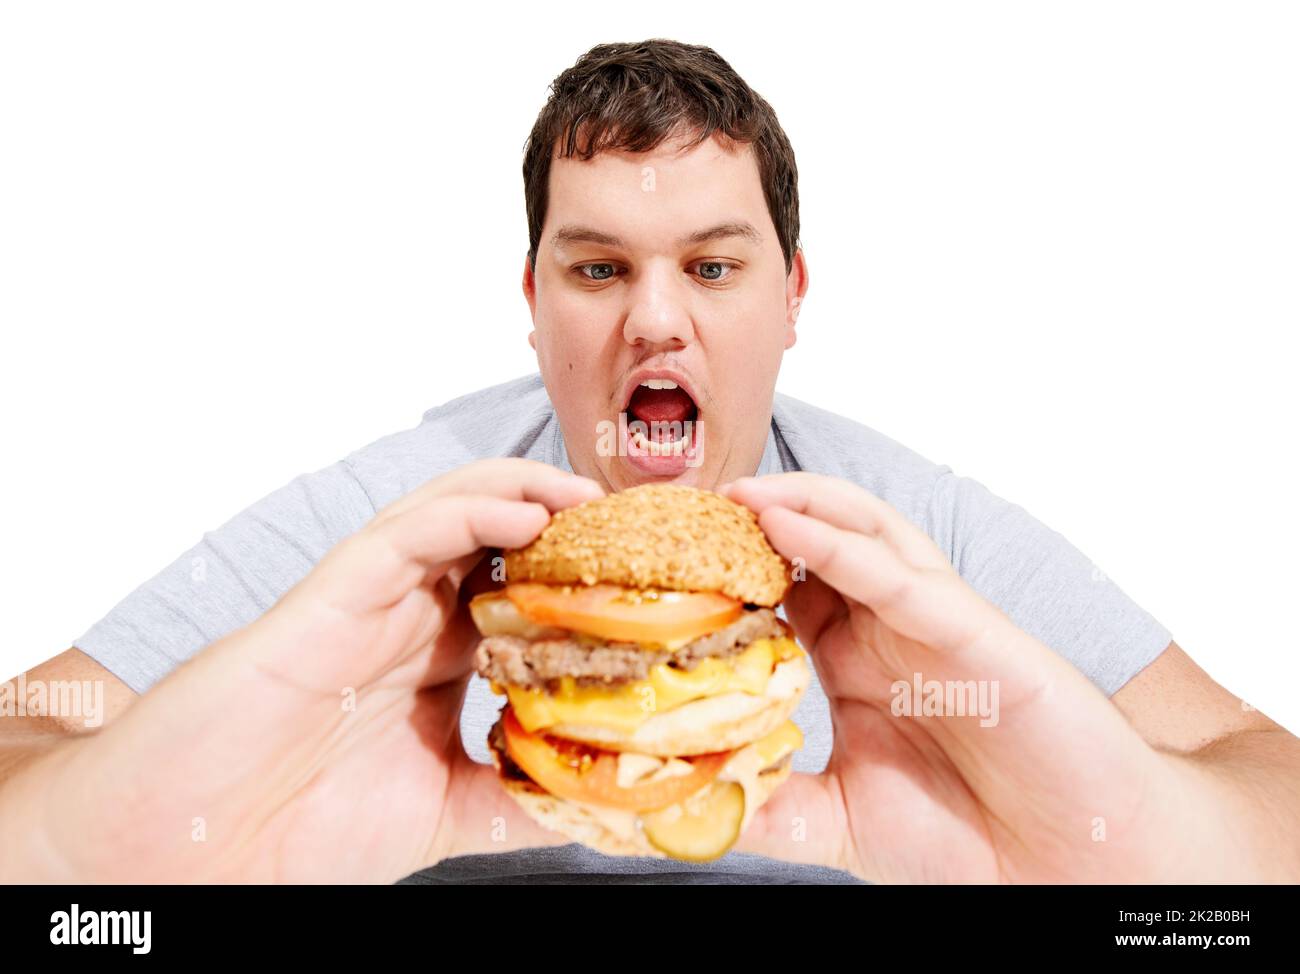 J'entre dans mon ventre, hamburger. Un jeune homme obèse sur le point de manger un énorme hamburger. Banque D'Images